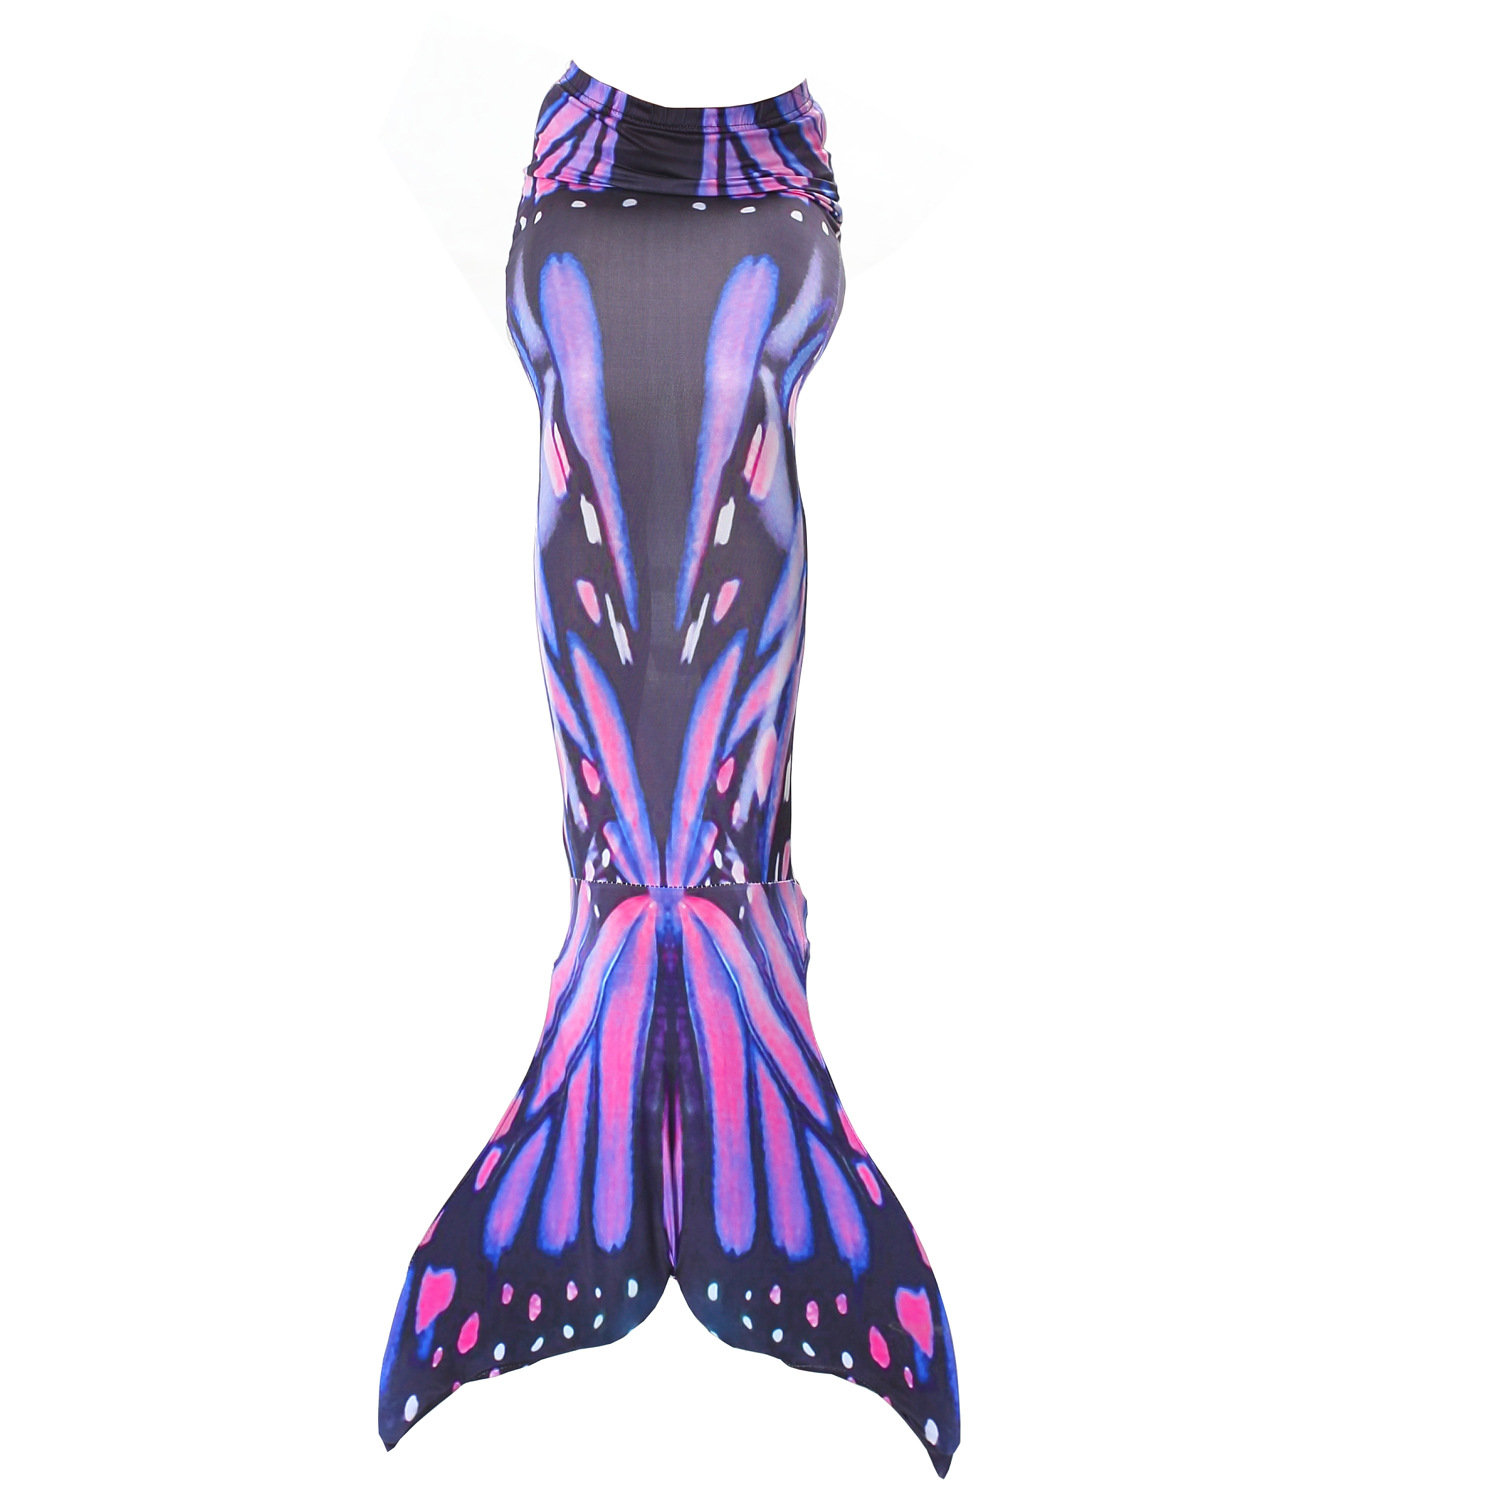 Divertente coda di sirena vestiti da nuoto regalo migliori gonne per abiti da festa per bambole principessa cosplay